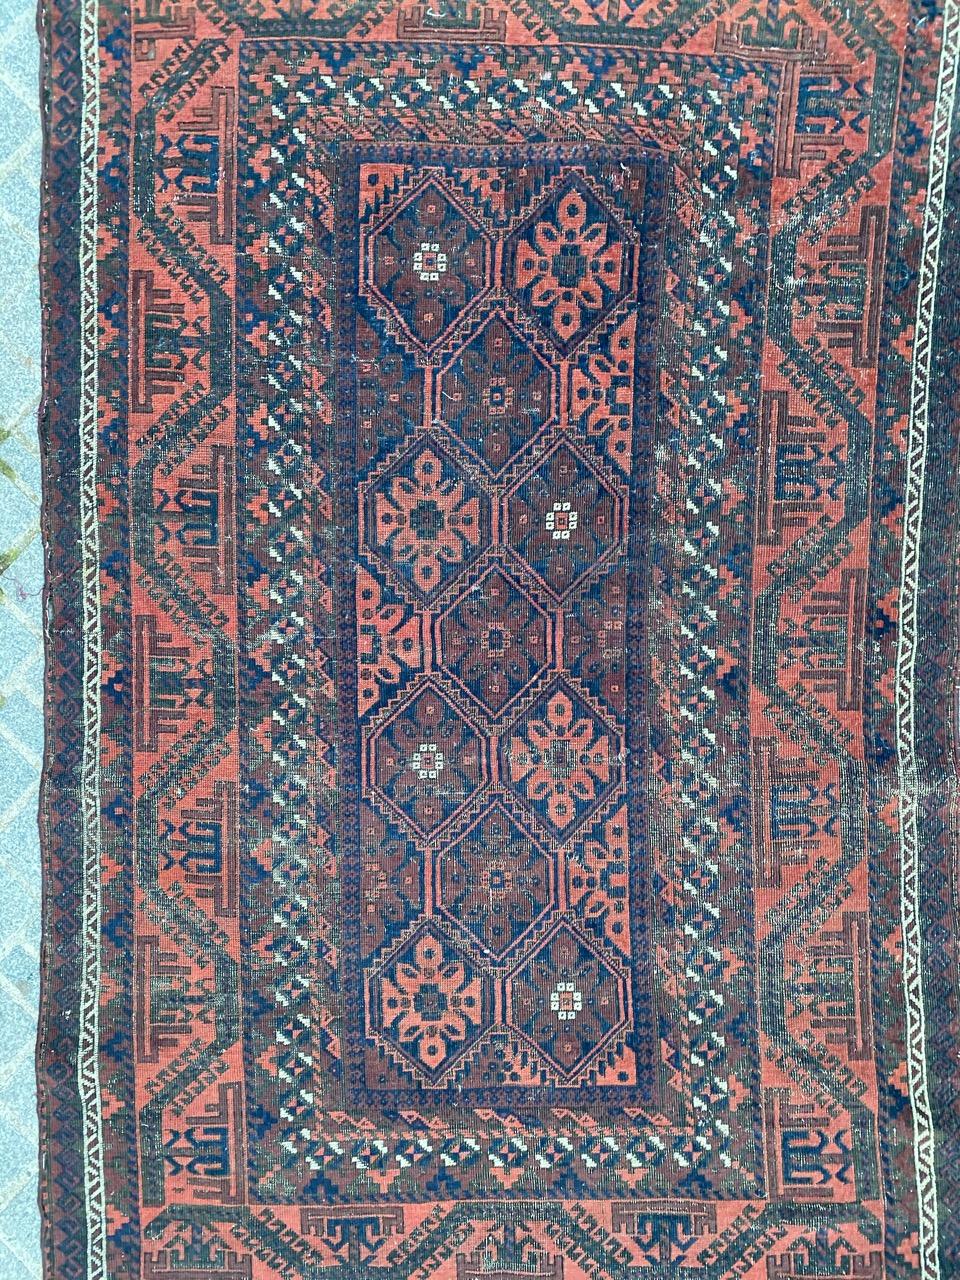 Magnifique tapis Baluch antique au design tribal géométrique et aux couleurs naturelles, entièrement noué à la main avec du velours de laine sur une base de laine.